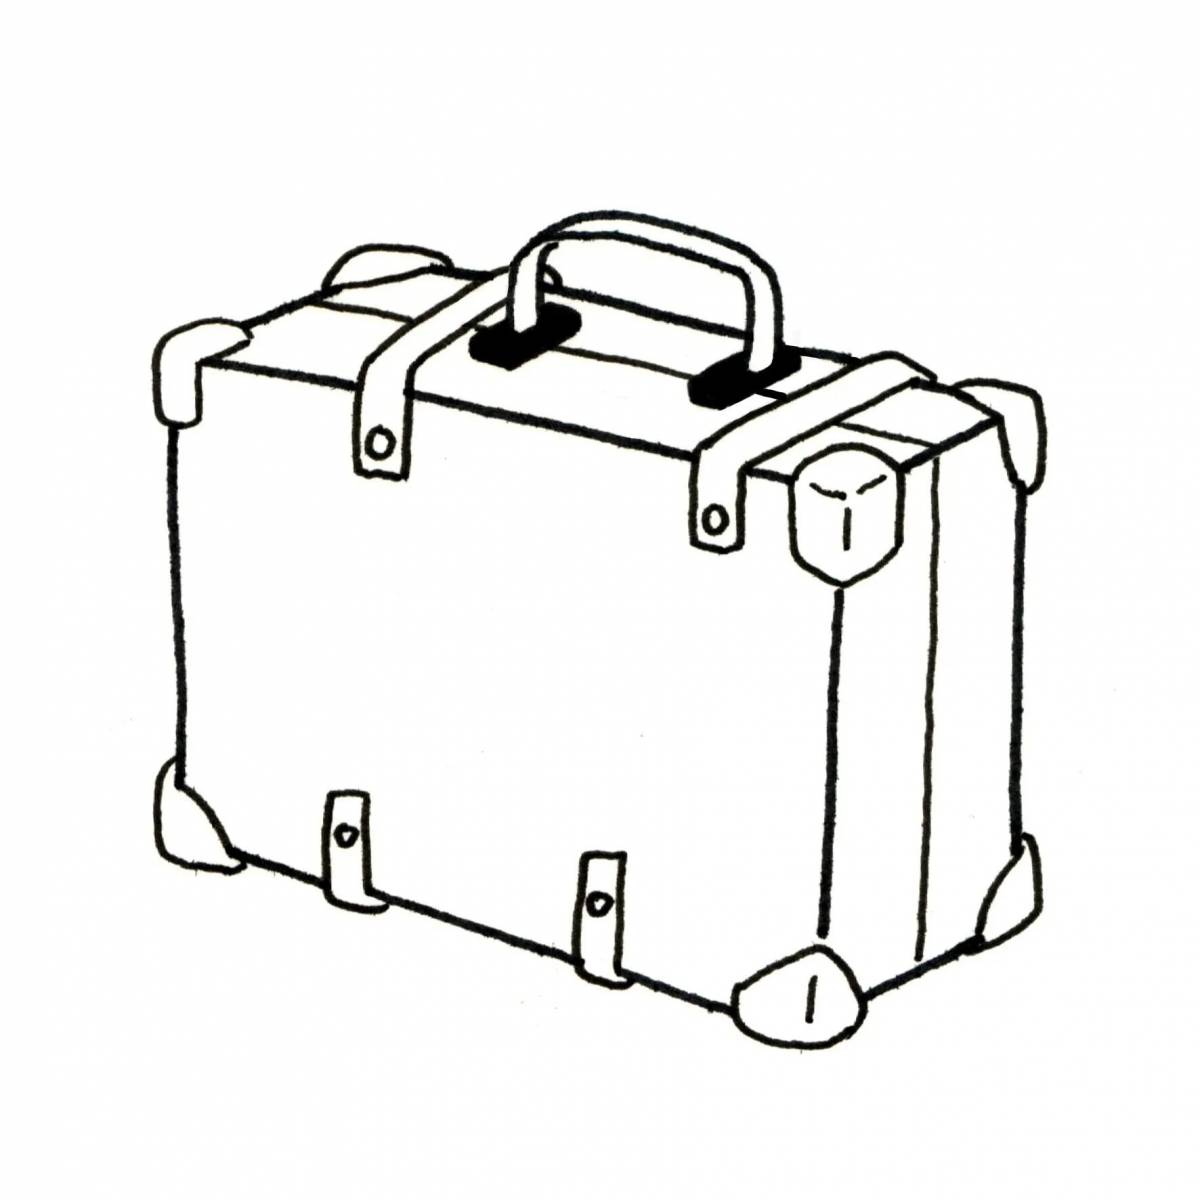 Юмористическая раскраска чемодана для детей